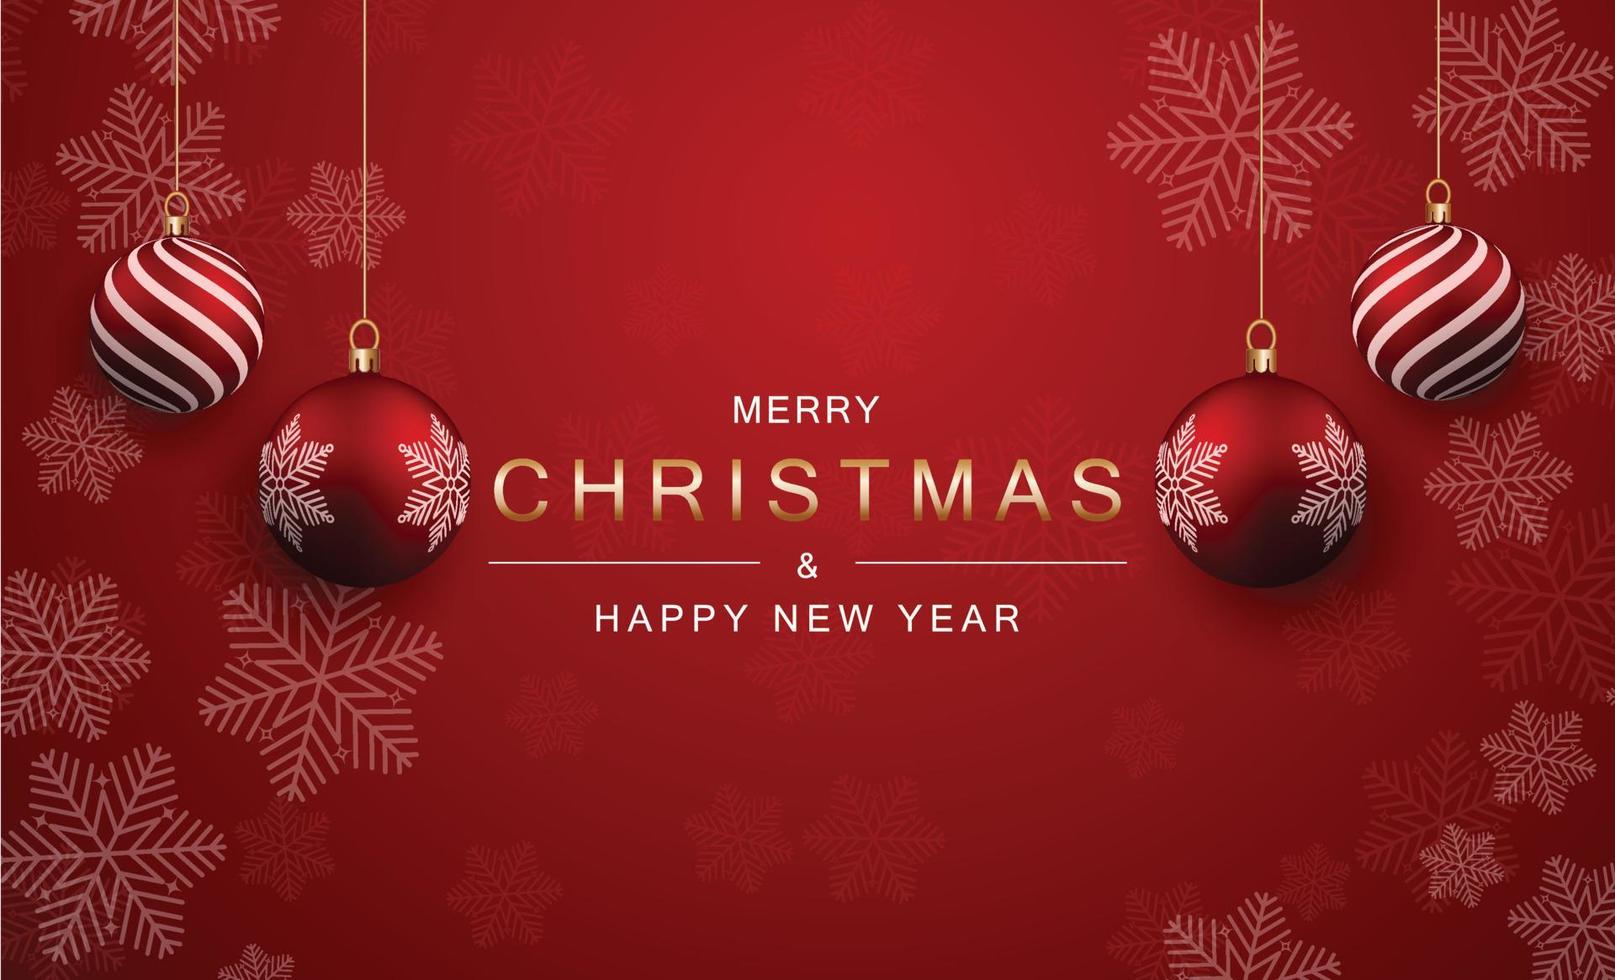 weihnachts- und neujahrshintergrund mit 4 realistischen weihnachtskugeln mit schönen vertikalen streifen und schneeflocken isoliert auf einem kräftigen roten hintergrund. weihnachts- und neujahrsgrußhintergrundkonzept. vektor